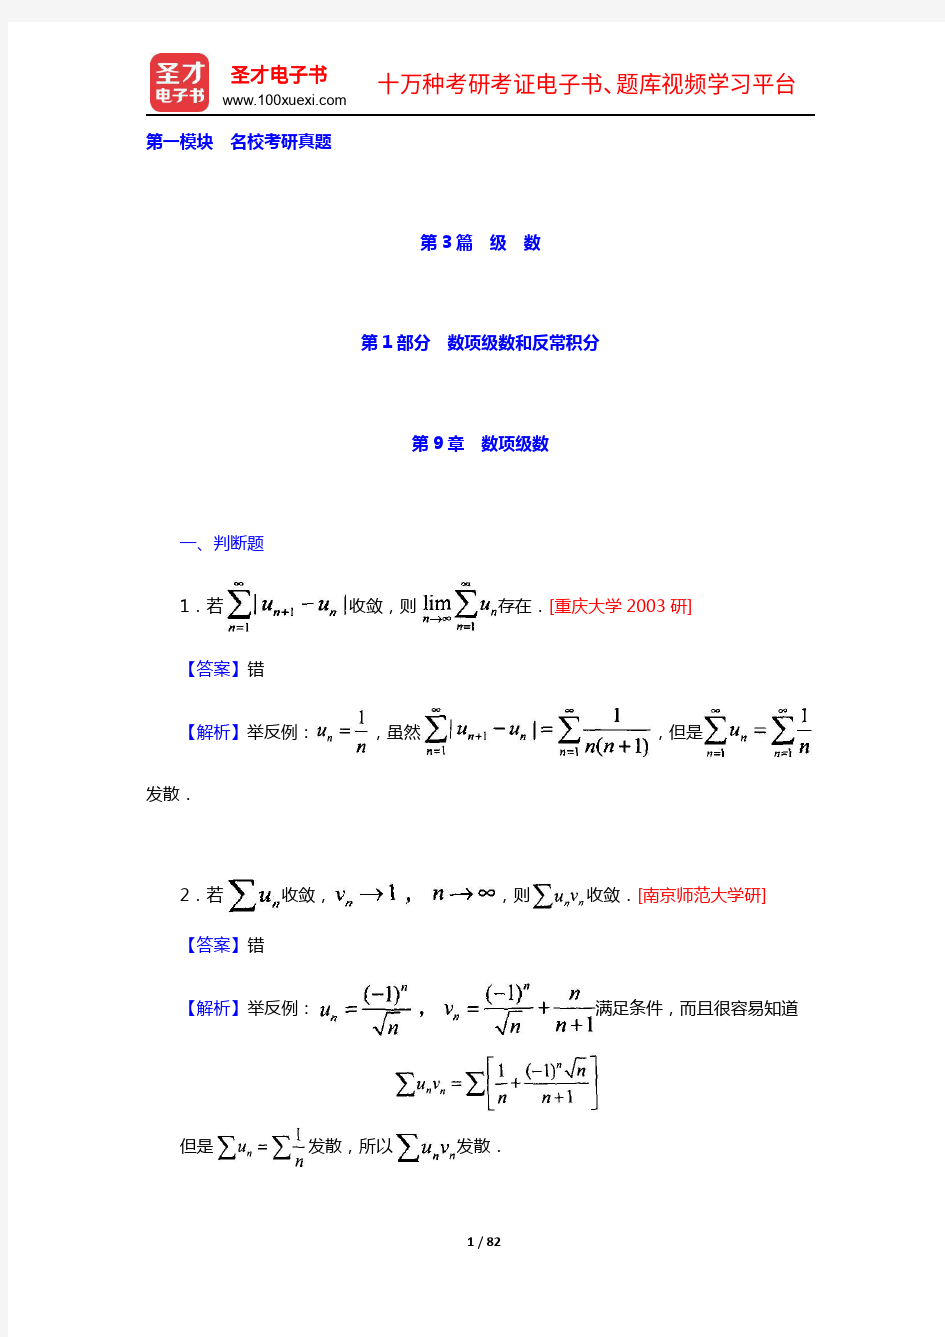 复旦大学数学系《数学分析》(第3版)(下册)配套题库(名校考研真题)【圣才出品】